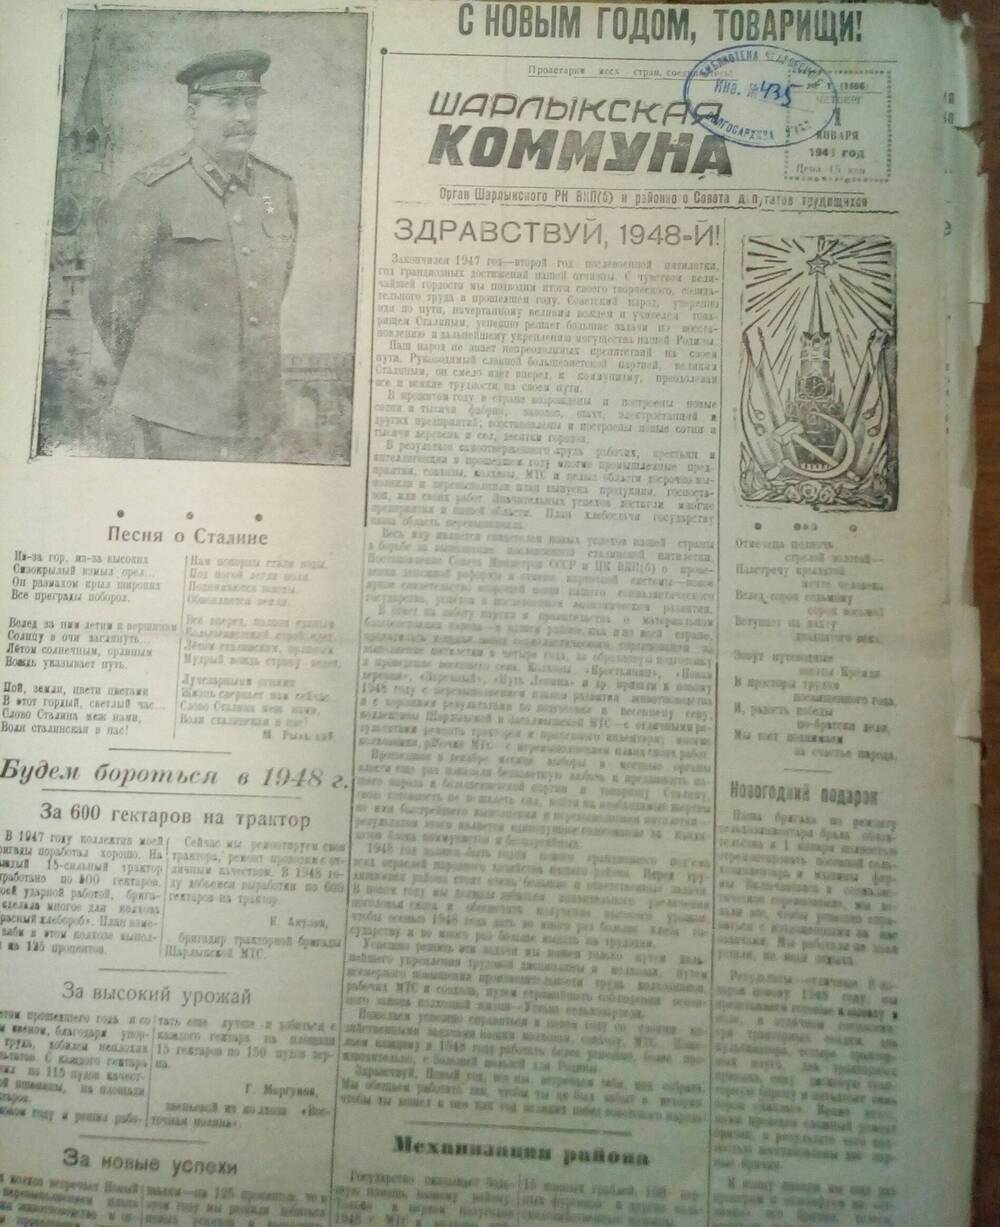 Подшивка газеты Шарлыкская коммуна за 1948 и 1949 годы.